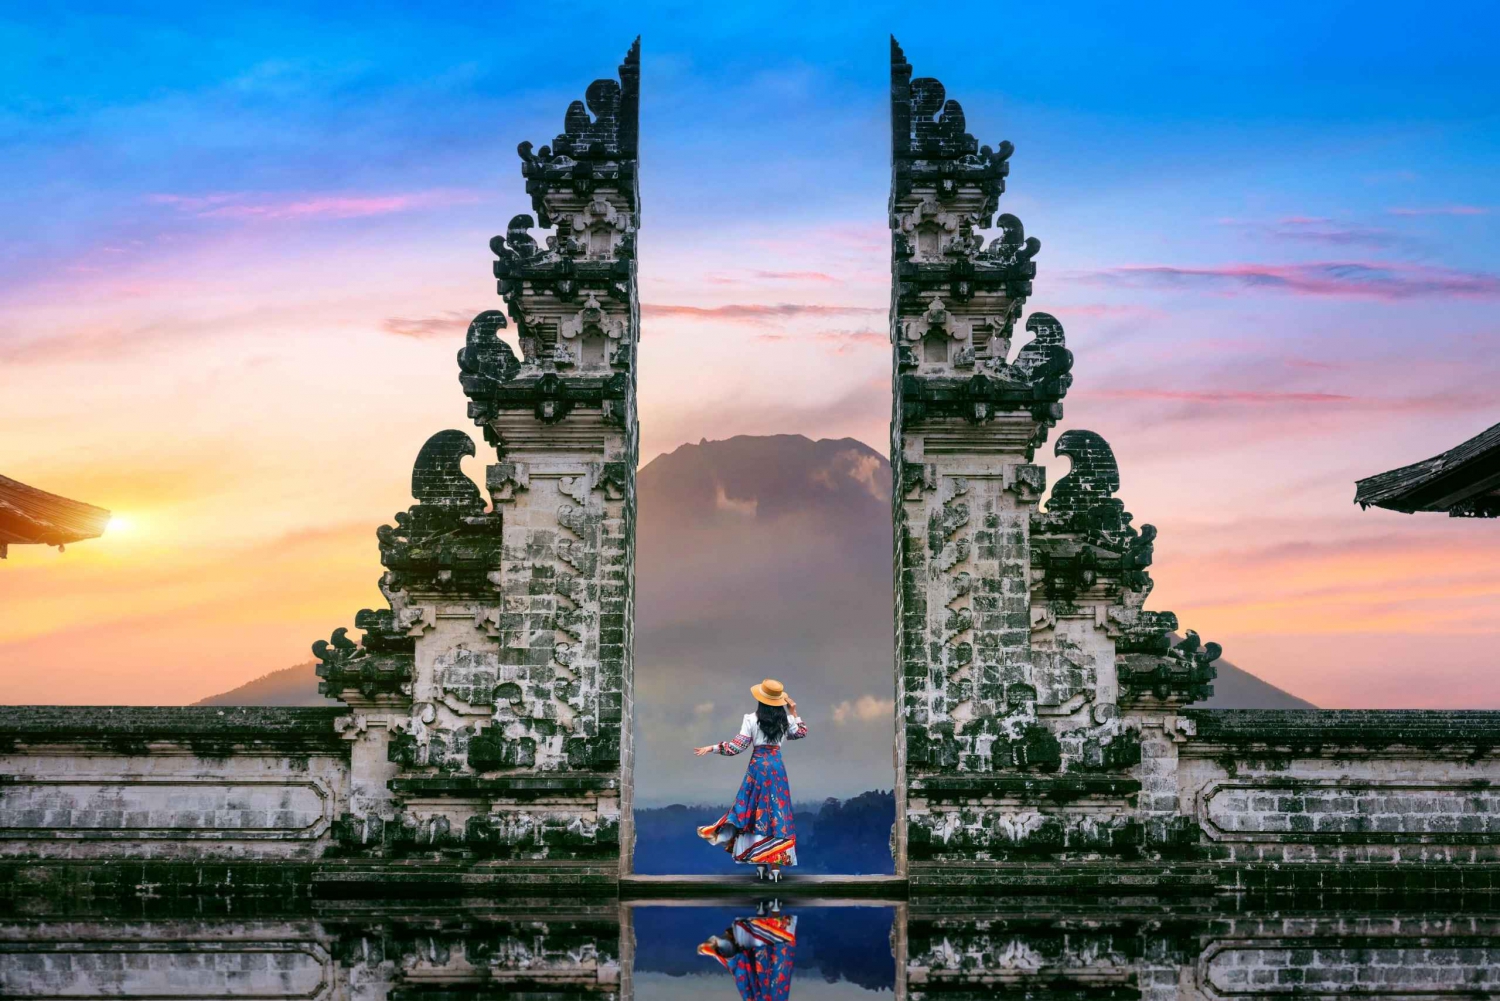 Z Bali: świątynia Lempuyang, Tirta gangga, taman ujung